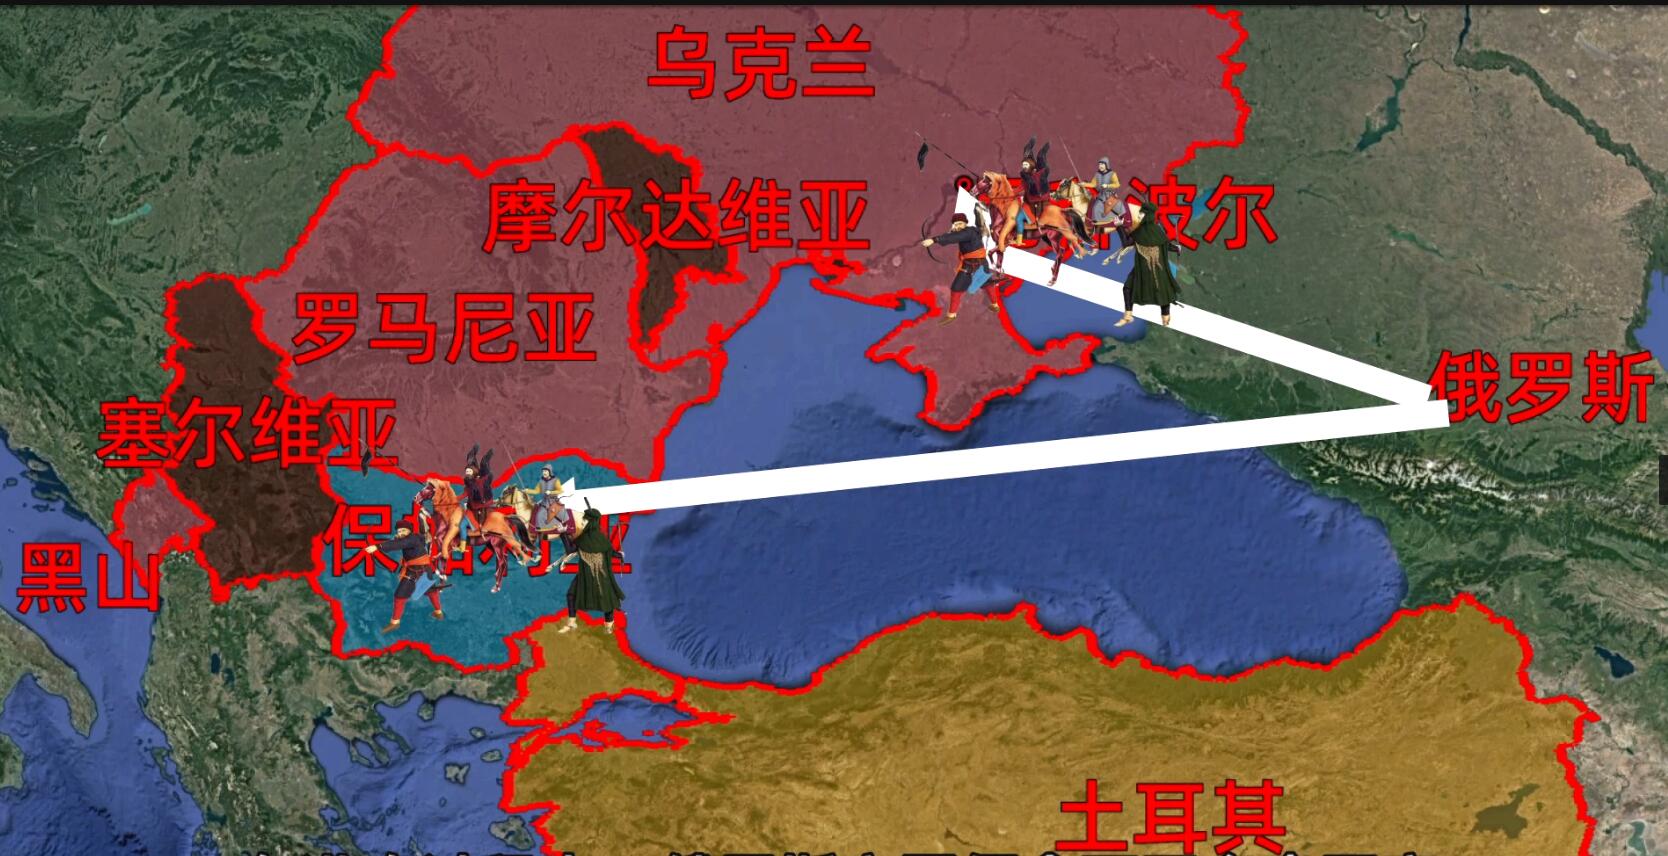 精讲俄土战争(4):俄罗斯越打越强大,土耳其被彻底打服